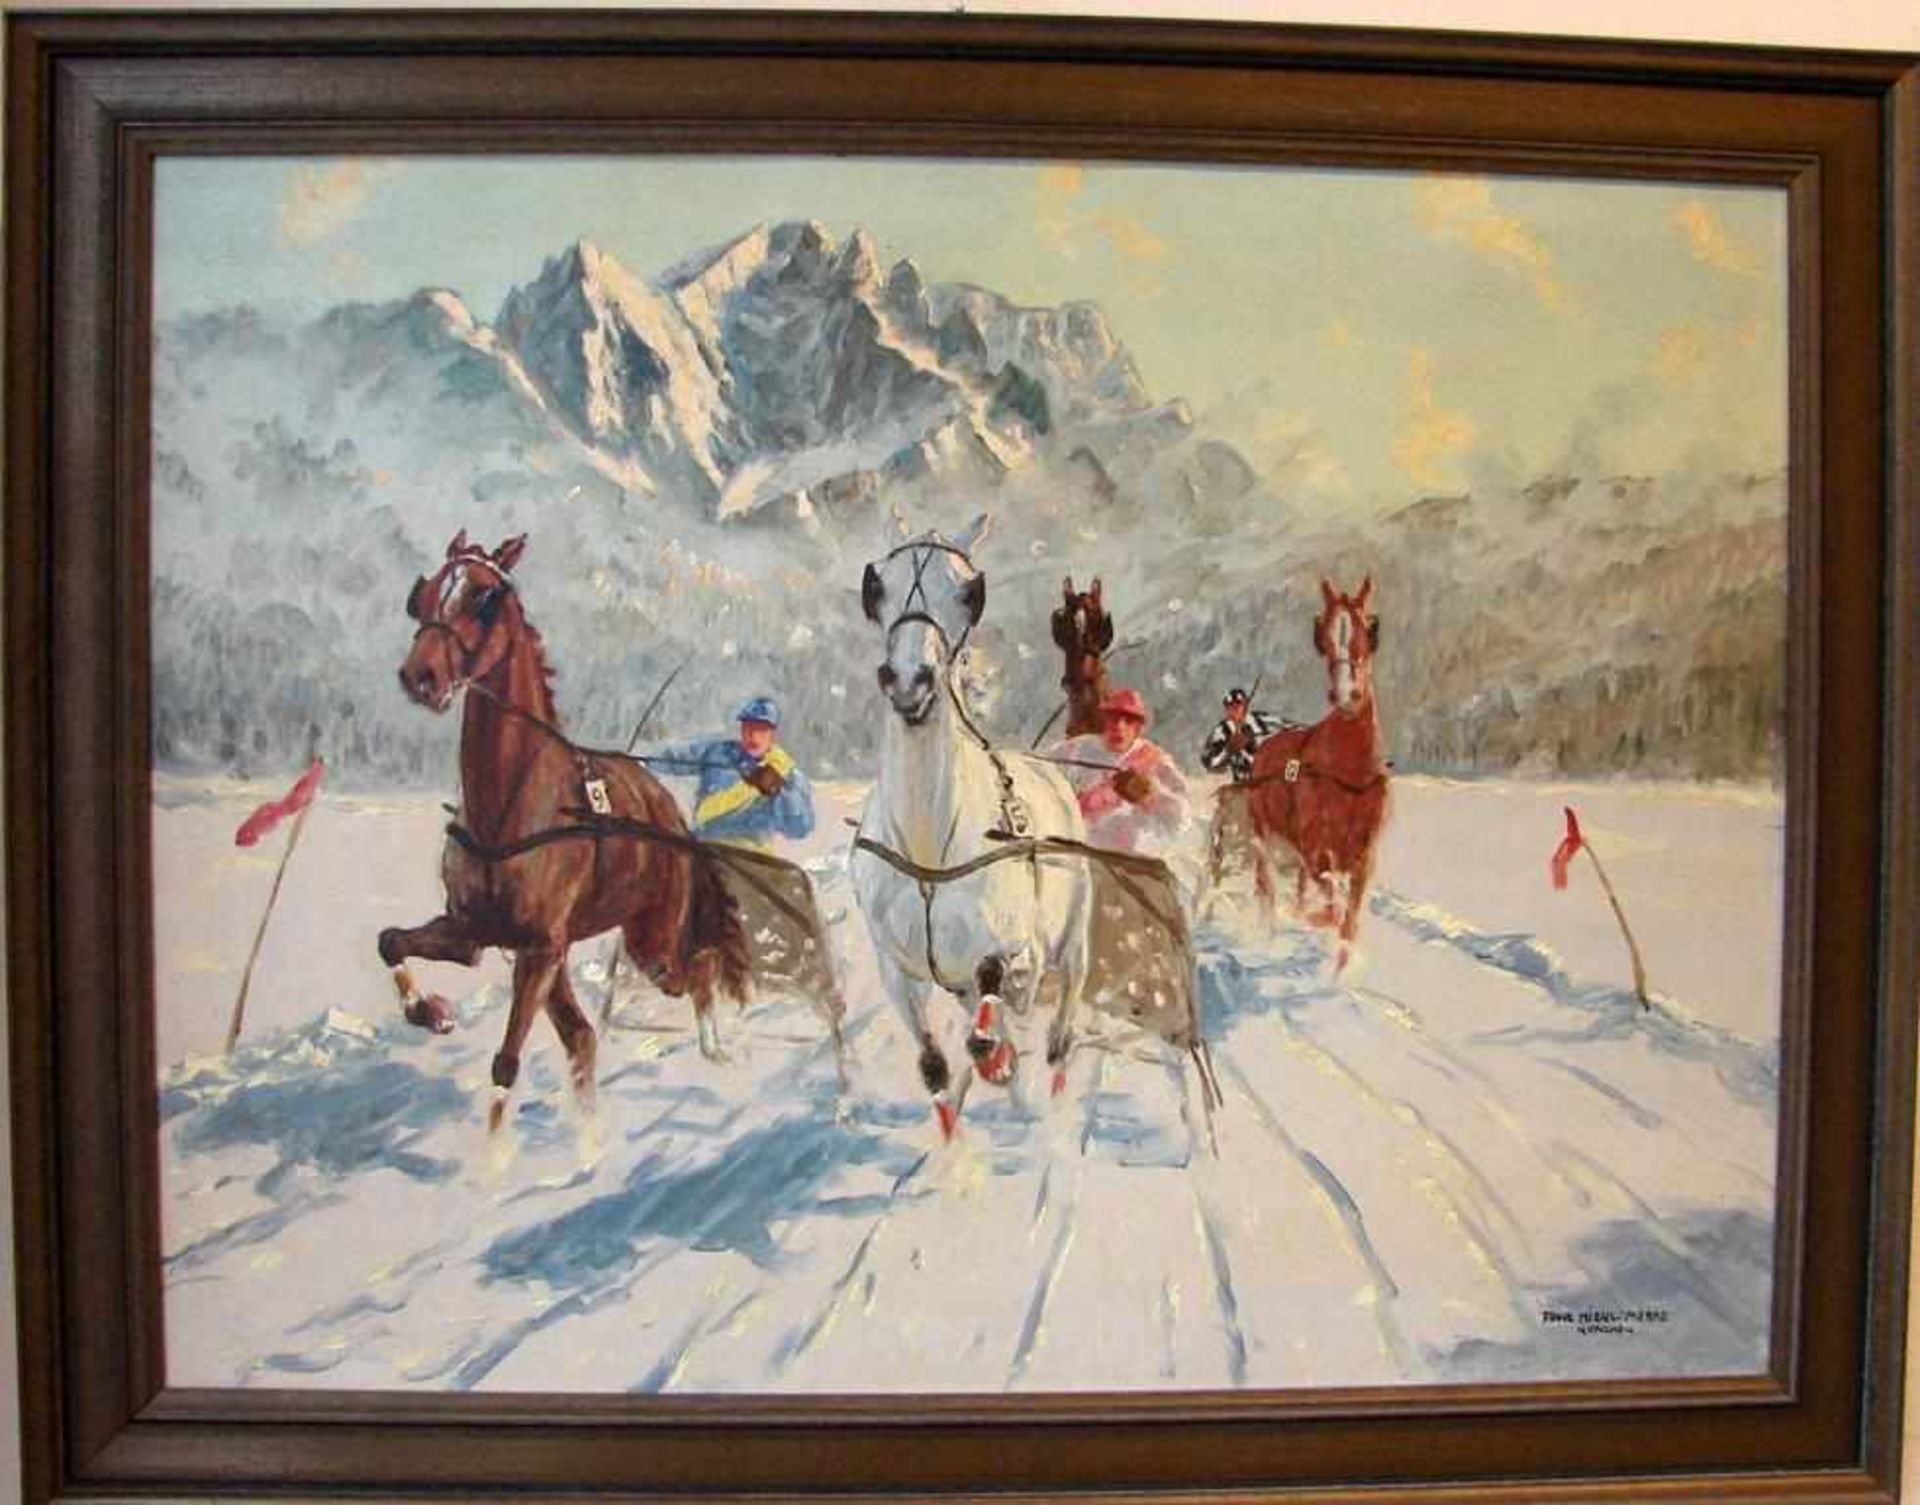 FRANZ MIENL-MERRE (1869-1943), "Pferdesport im Schnee", Öl/L, u.re.sig., ca. 79 x 59 cm